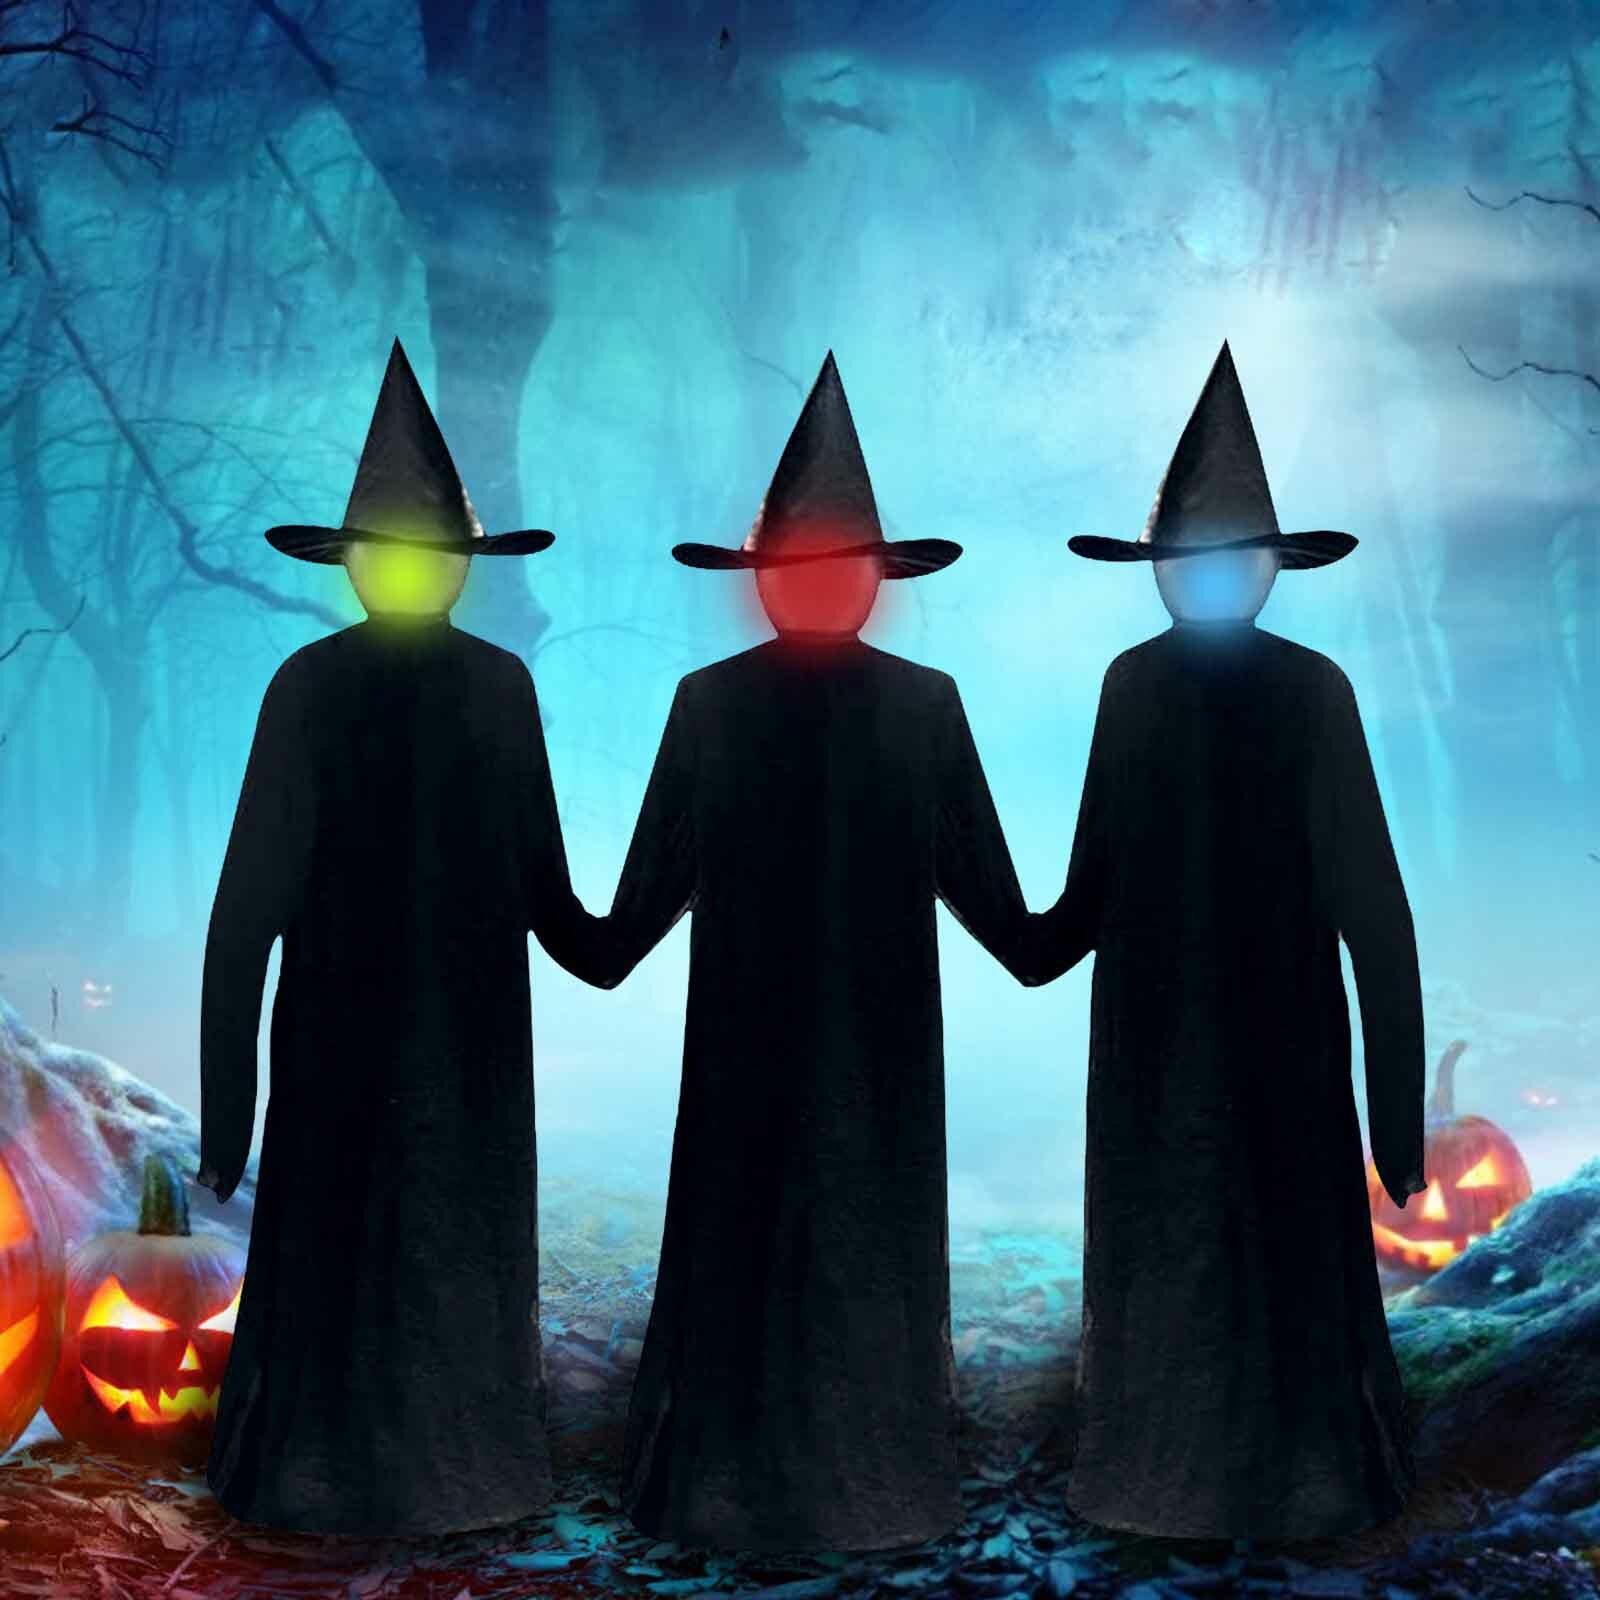 

Хэллоуин светящаяся ведьма голосовое управление индукция Хэллоуин Wizard несколько цветов плащ для Хэллоуина костюмы на